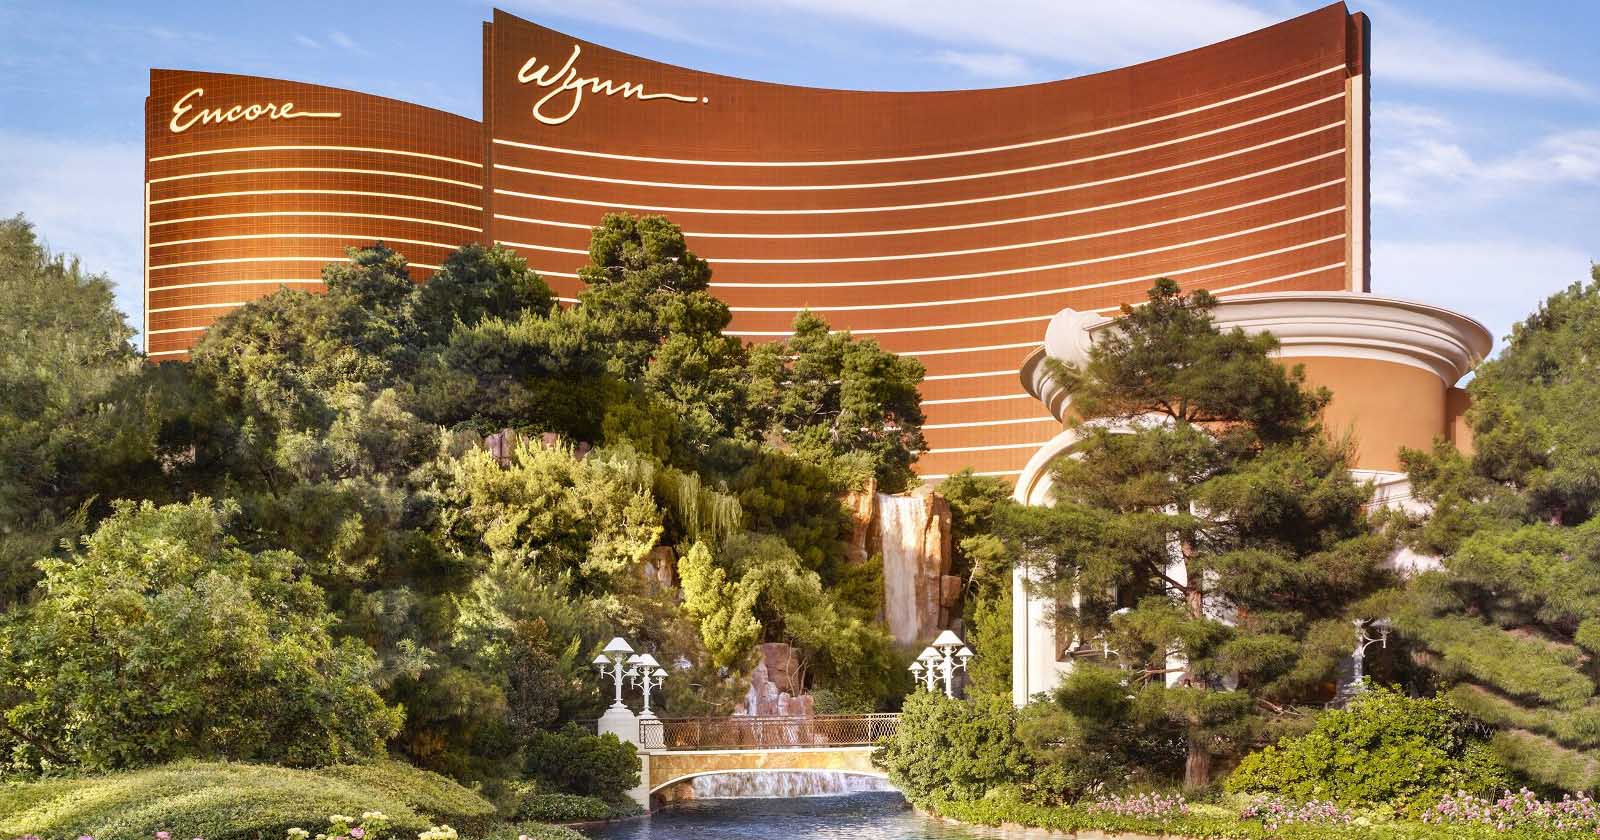 Wynn Encore Las Vegas hotels - Most opulent casino on the Strip